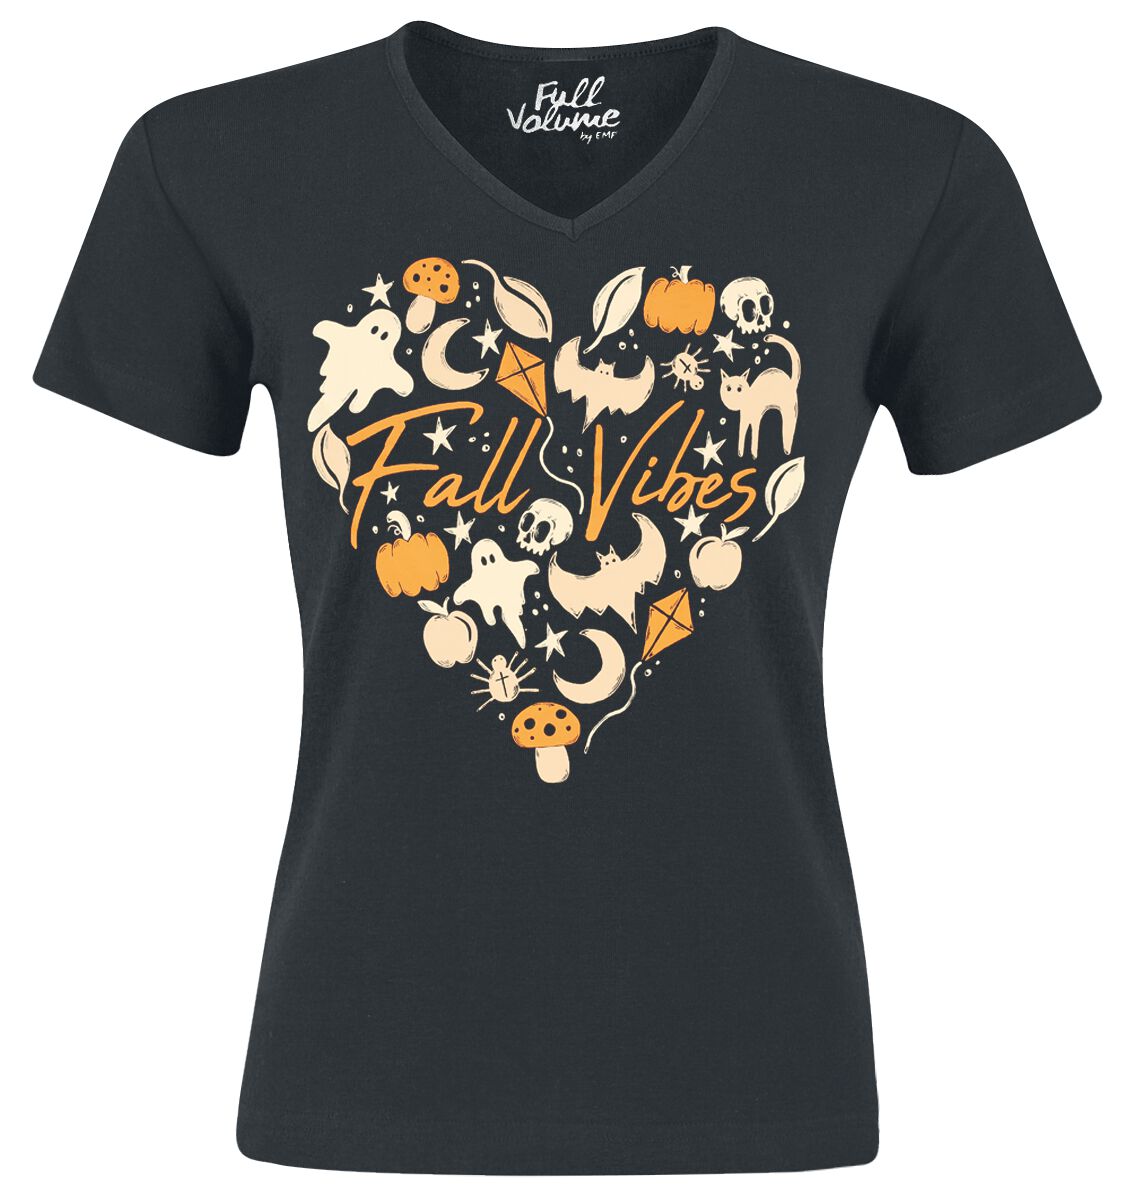 Full Volume by EMP T-Shirt - Halloween T-Shirt mit Fall Vibes Herzmotiv - S bis 4XL - für Damen - Größe XL - schwarz